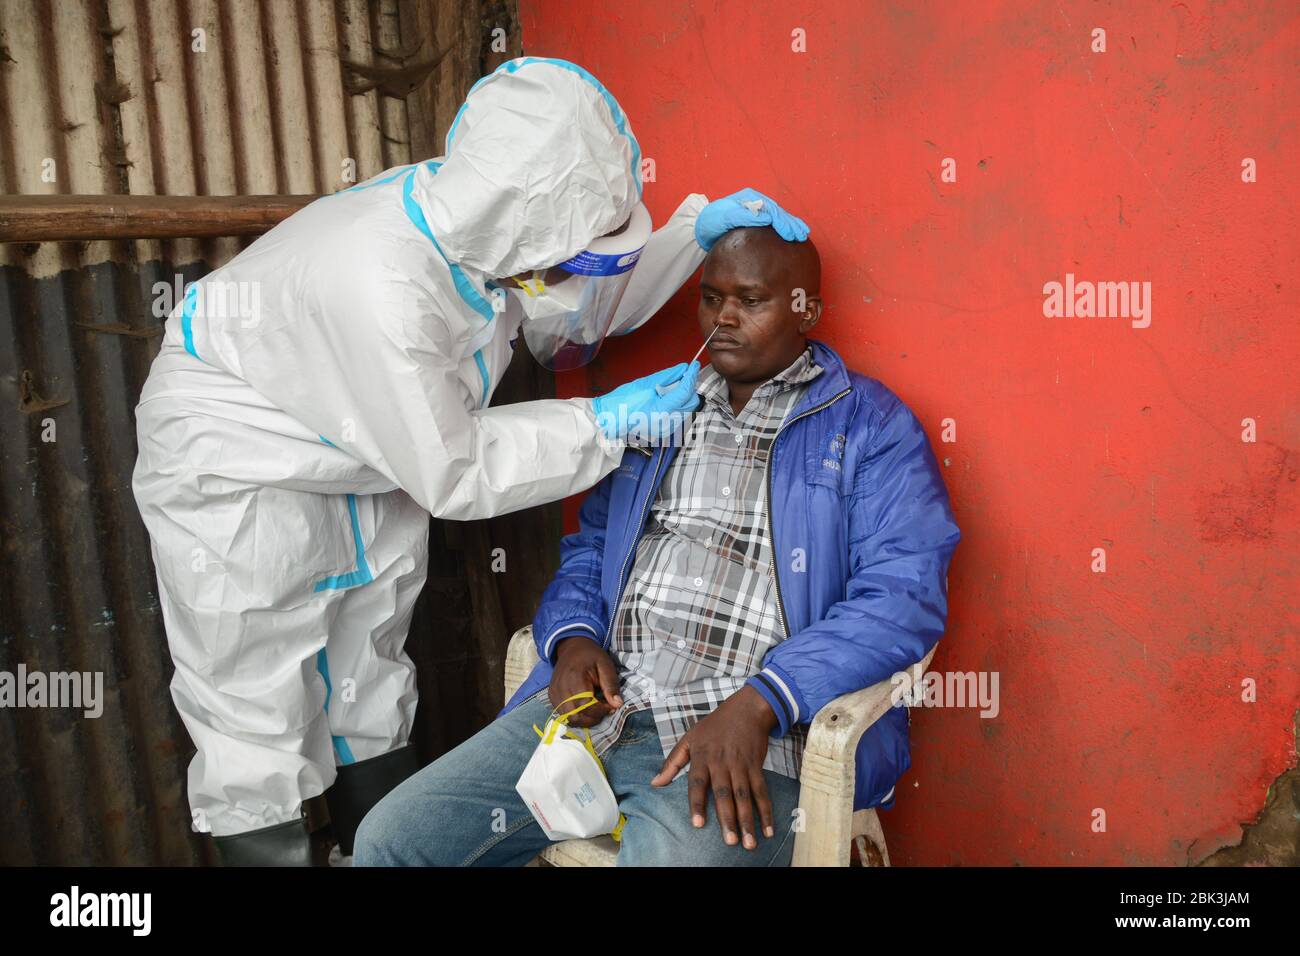 Un agent de santé effectue un test de prélèvement sur un résident pendant la pandémie du virus corona. Un test de masse des cas COVID-19 dans la région de Kawangware a été effectué sur les résidents. Jusqu'à présent, le Kenya a signalé 411 cas de coronavirus, 144 reprises et 17 décès. Banque D'Images